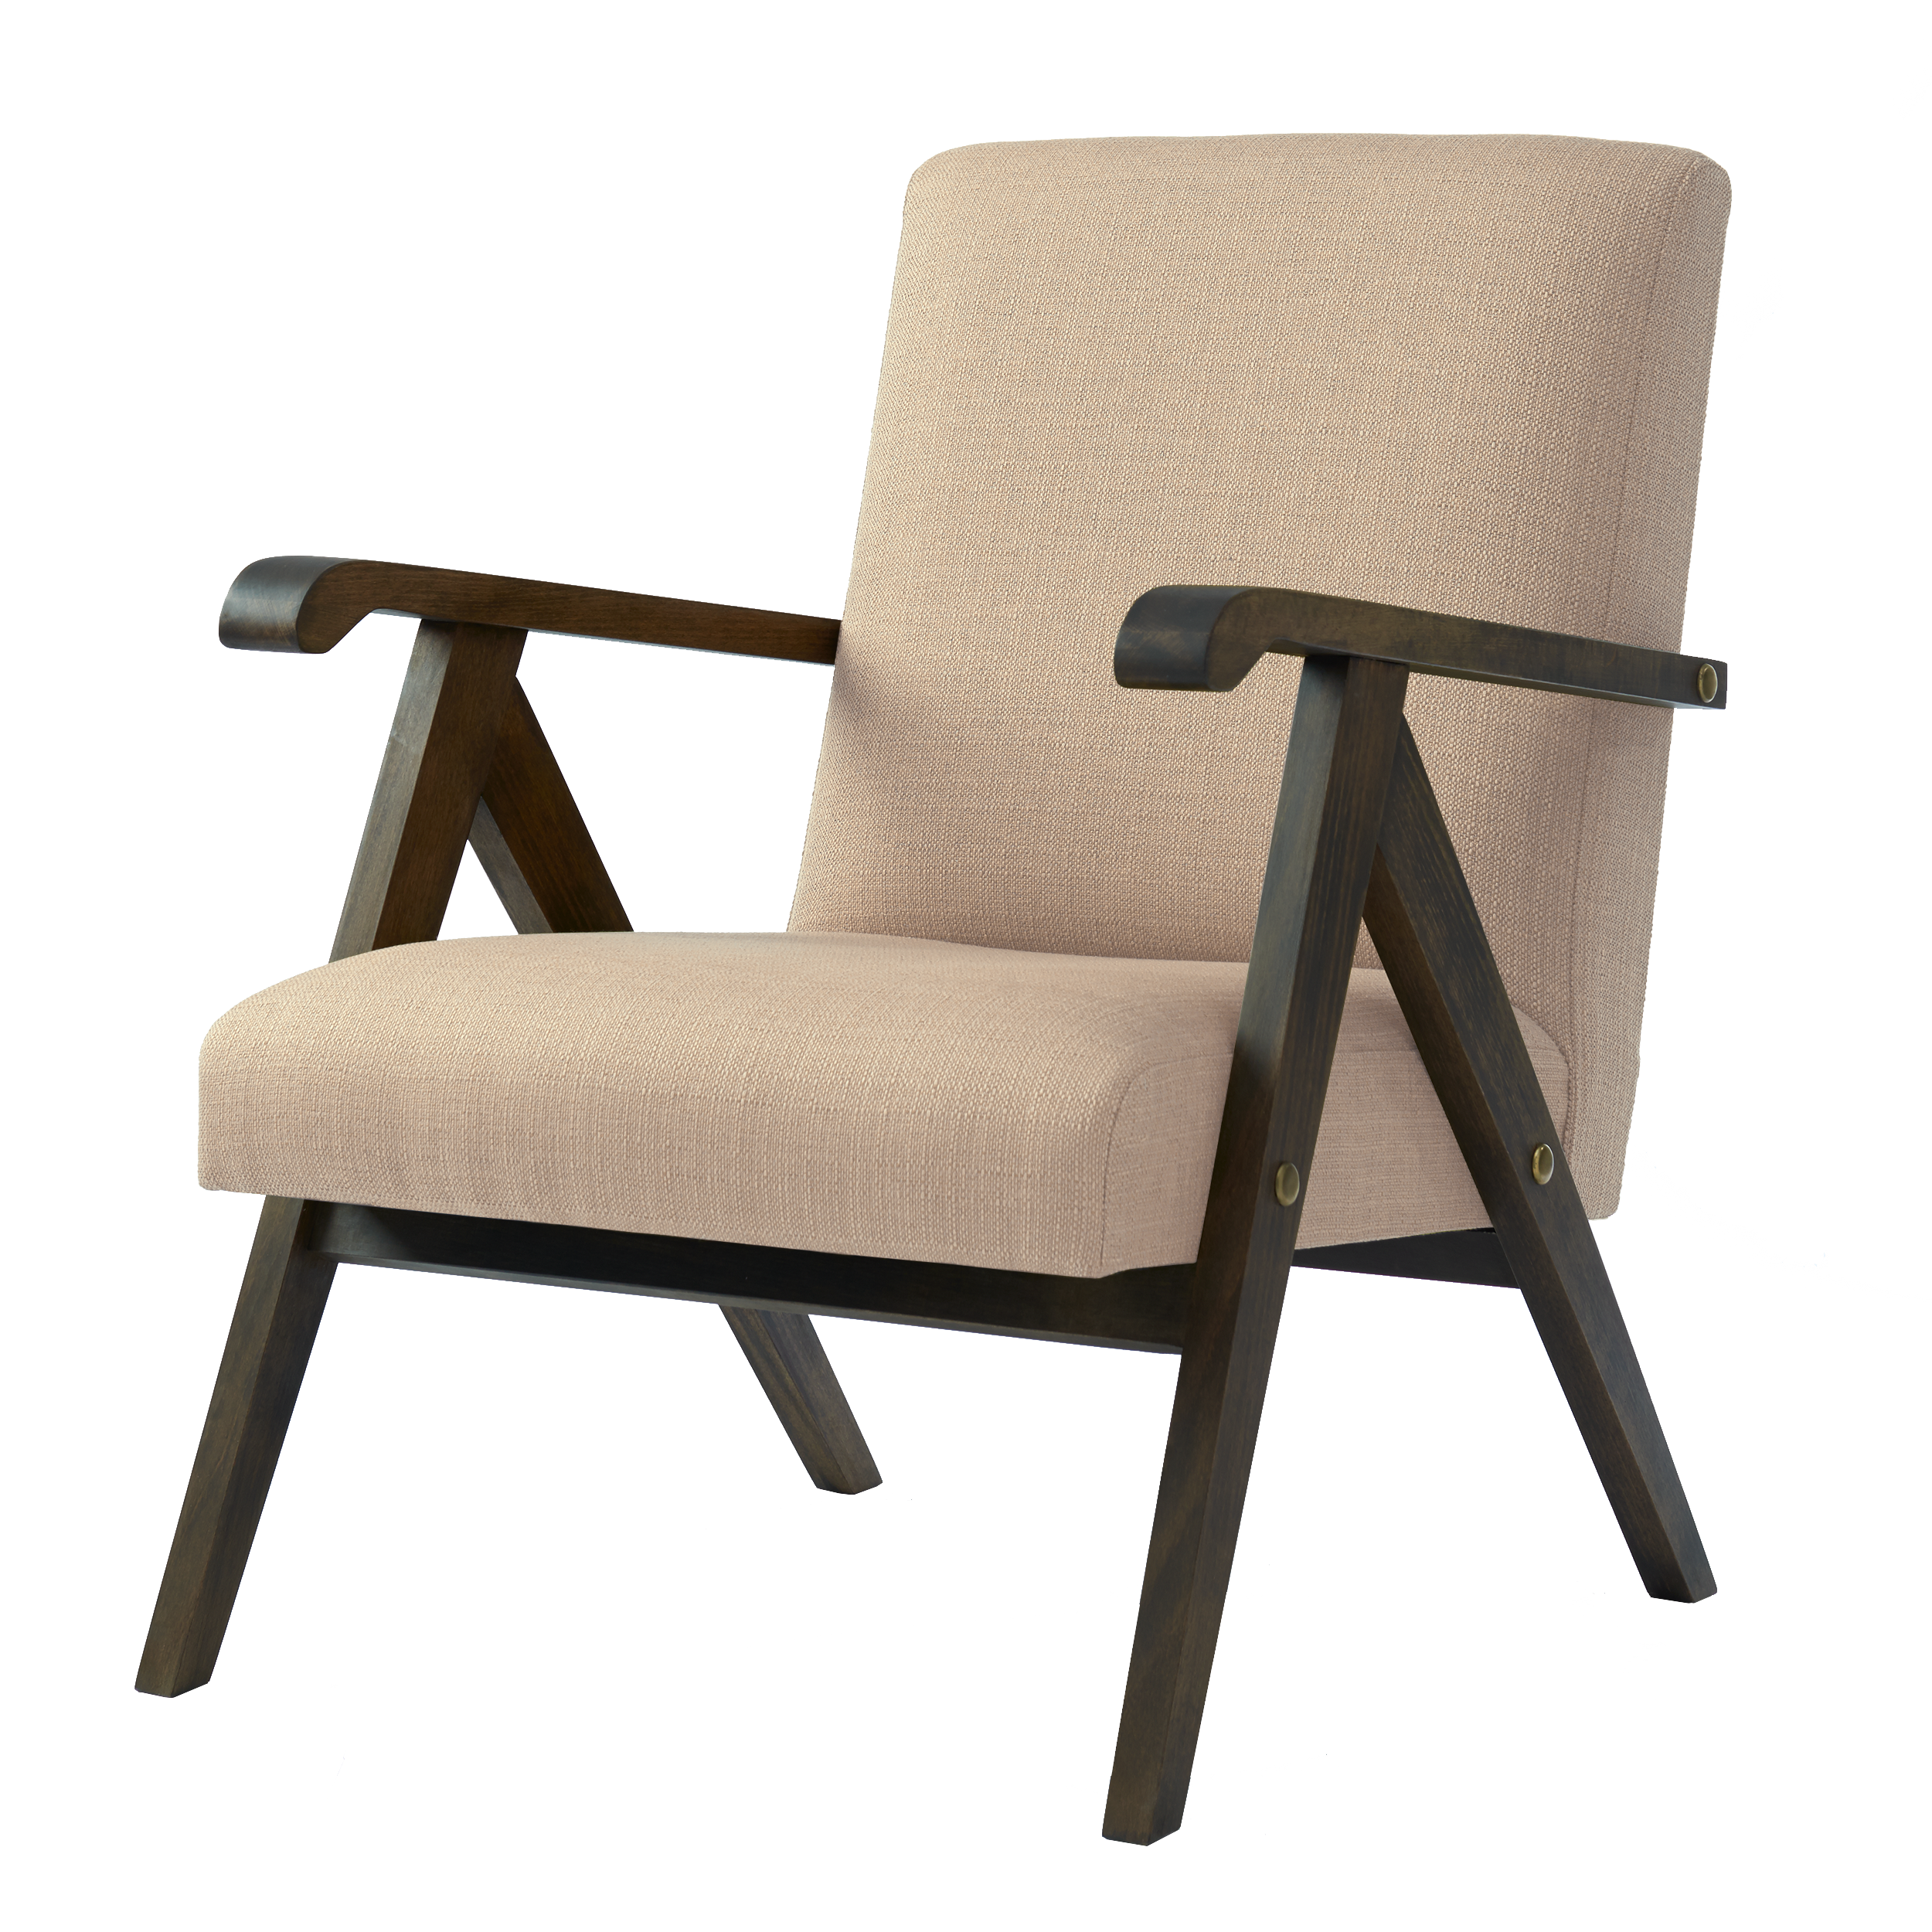 MONKLET Chair upholstery colour white, dark frame